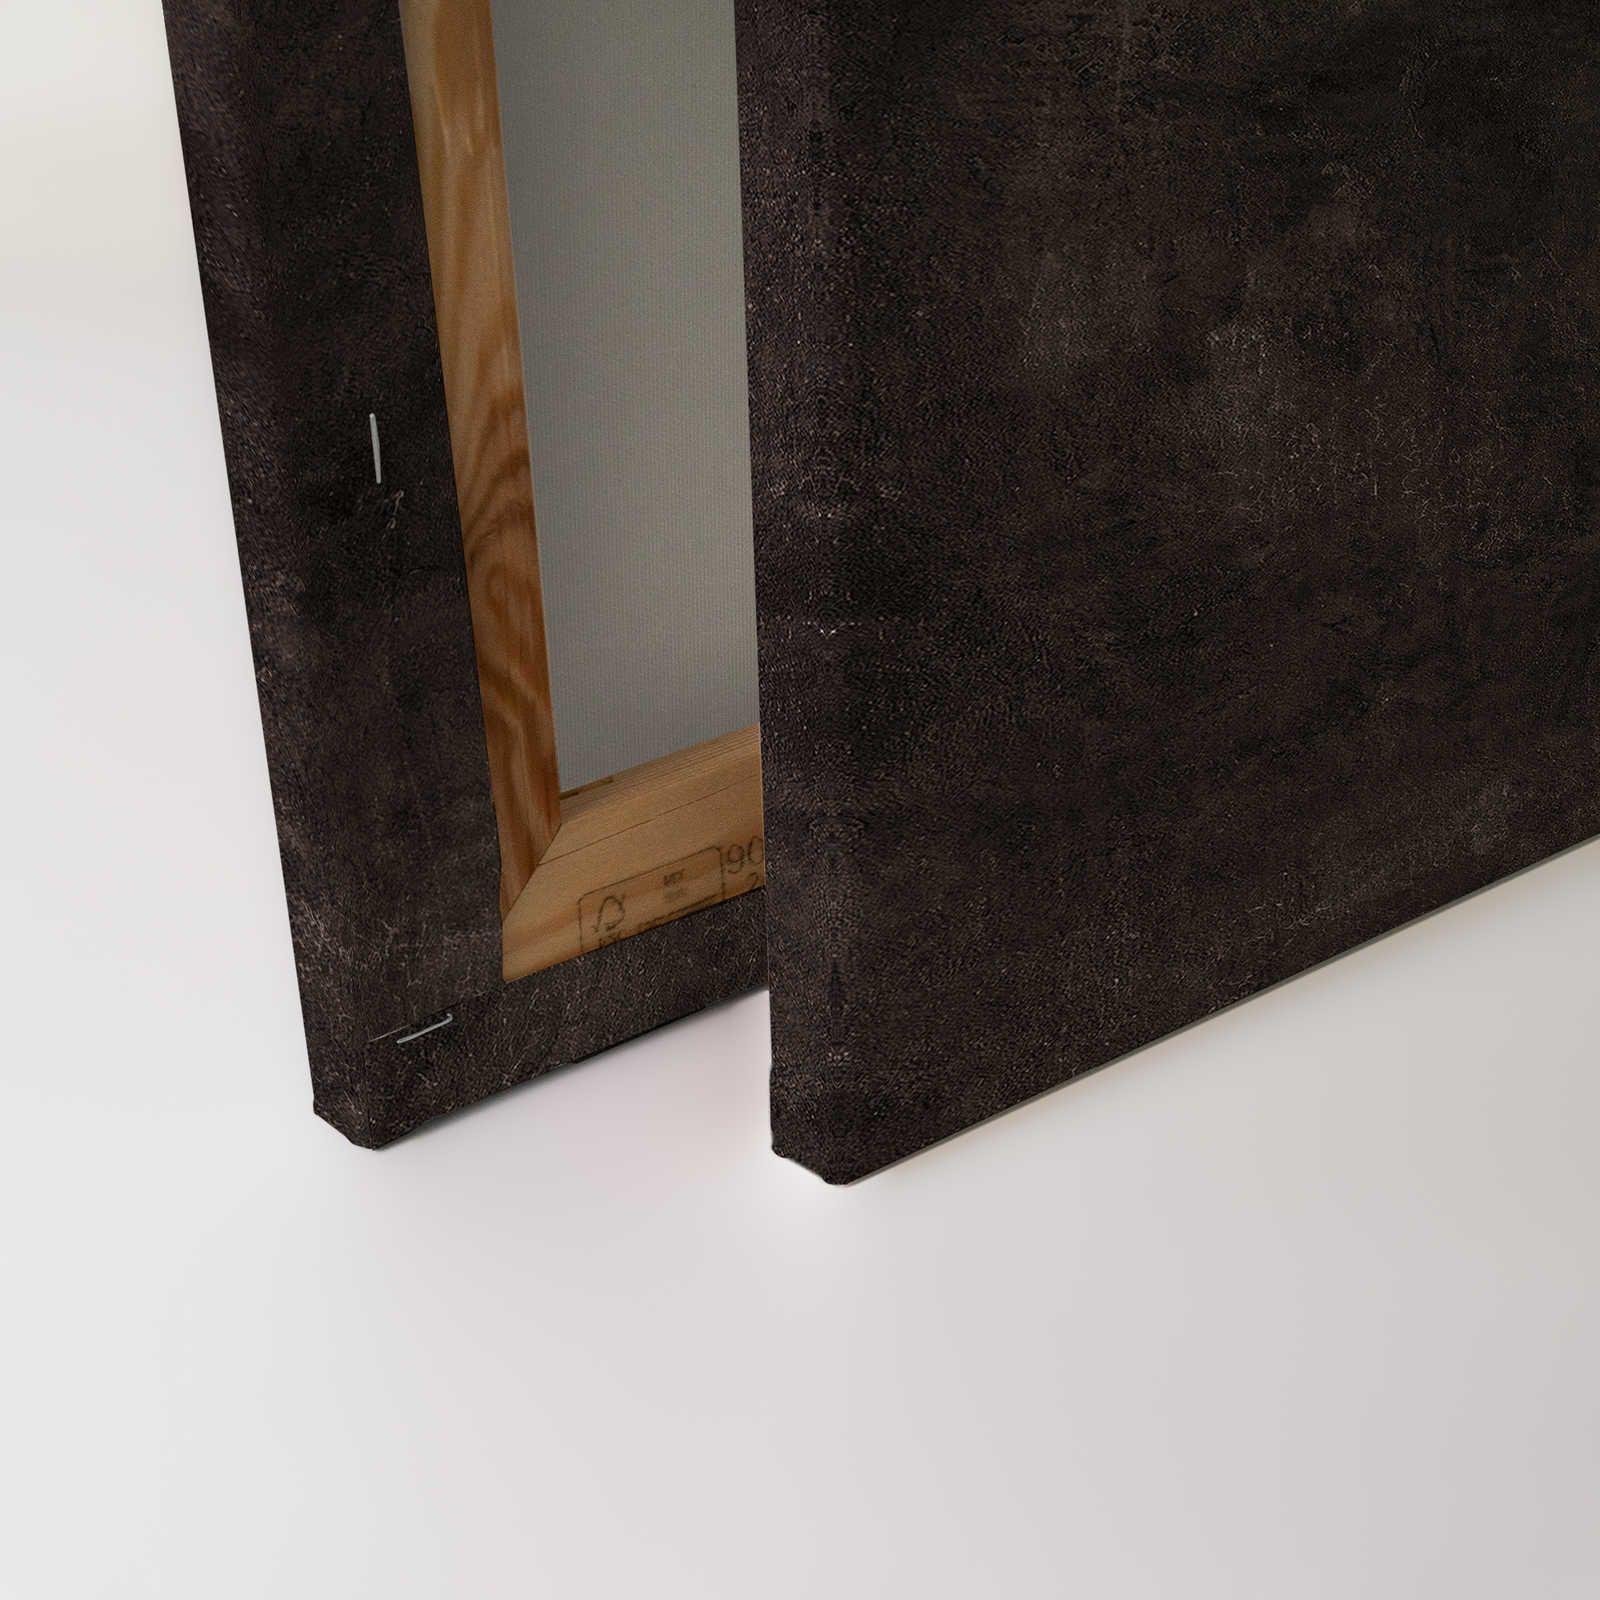             Palomas Room 2 - Quadro su tela nera Ritratto astratto - 0,90 m x 0,60 m
        